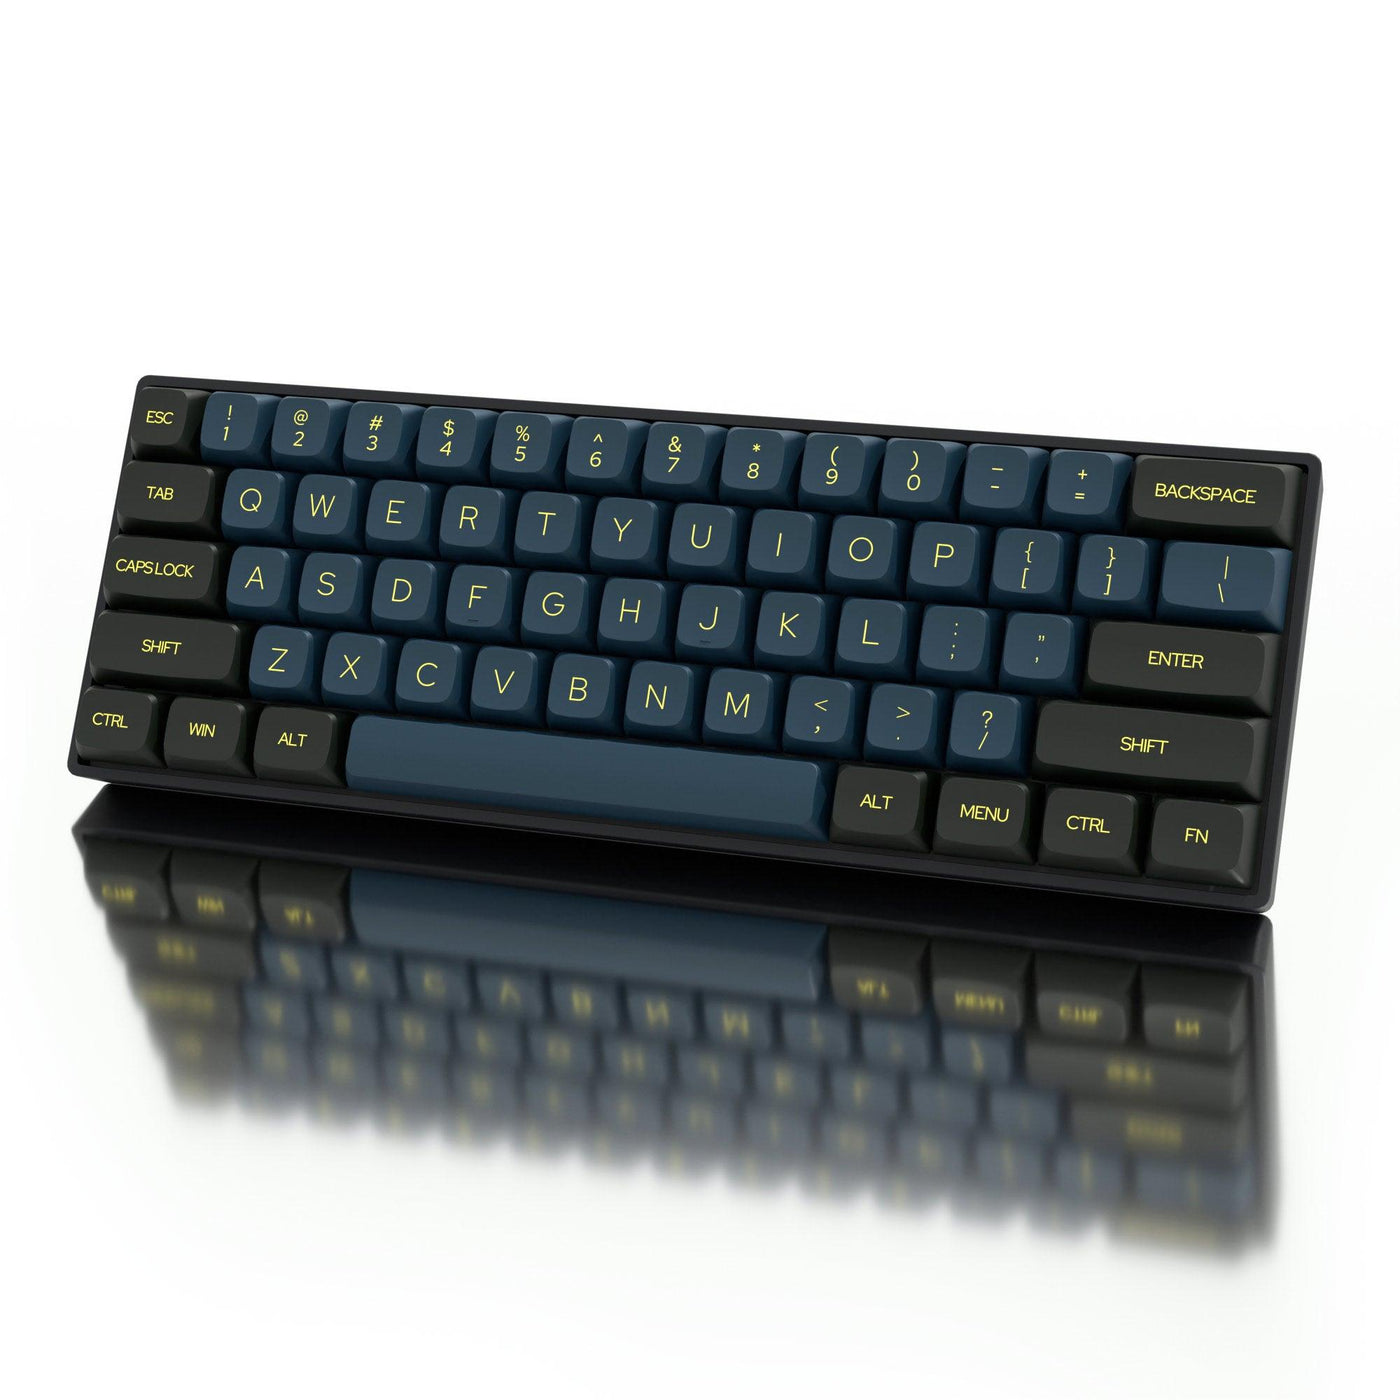 Dustsilver K61 Black Green NightShade 60 Percent Wireless Mechanical Keyboard - dustsilver